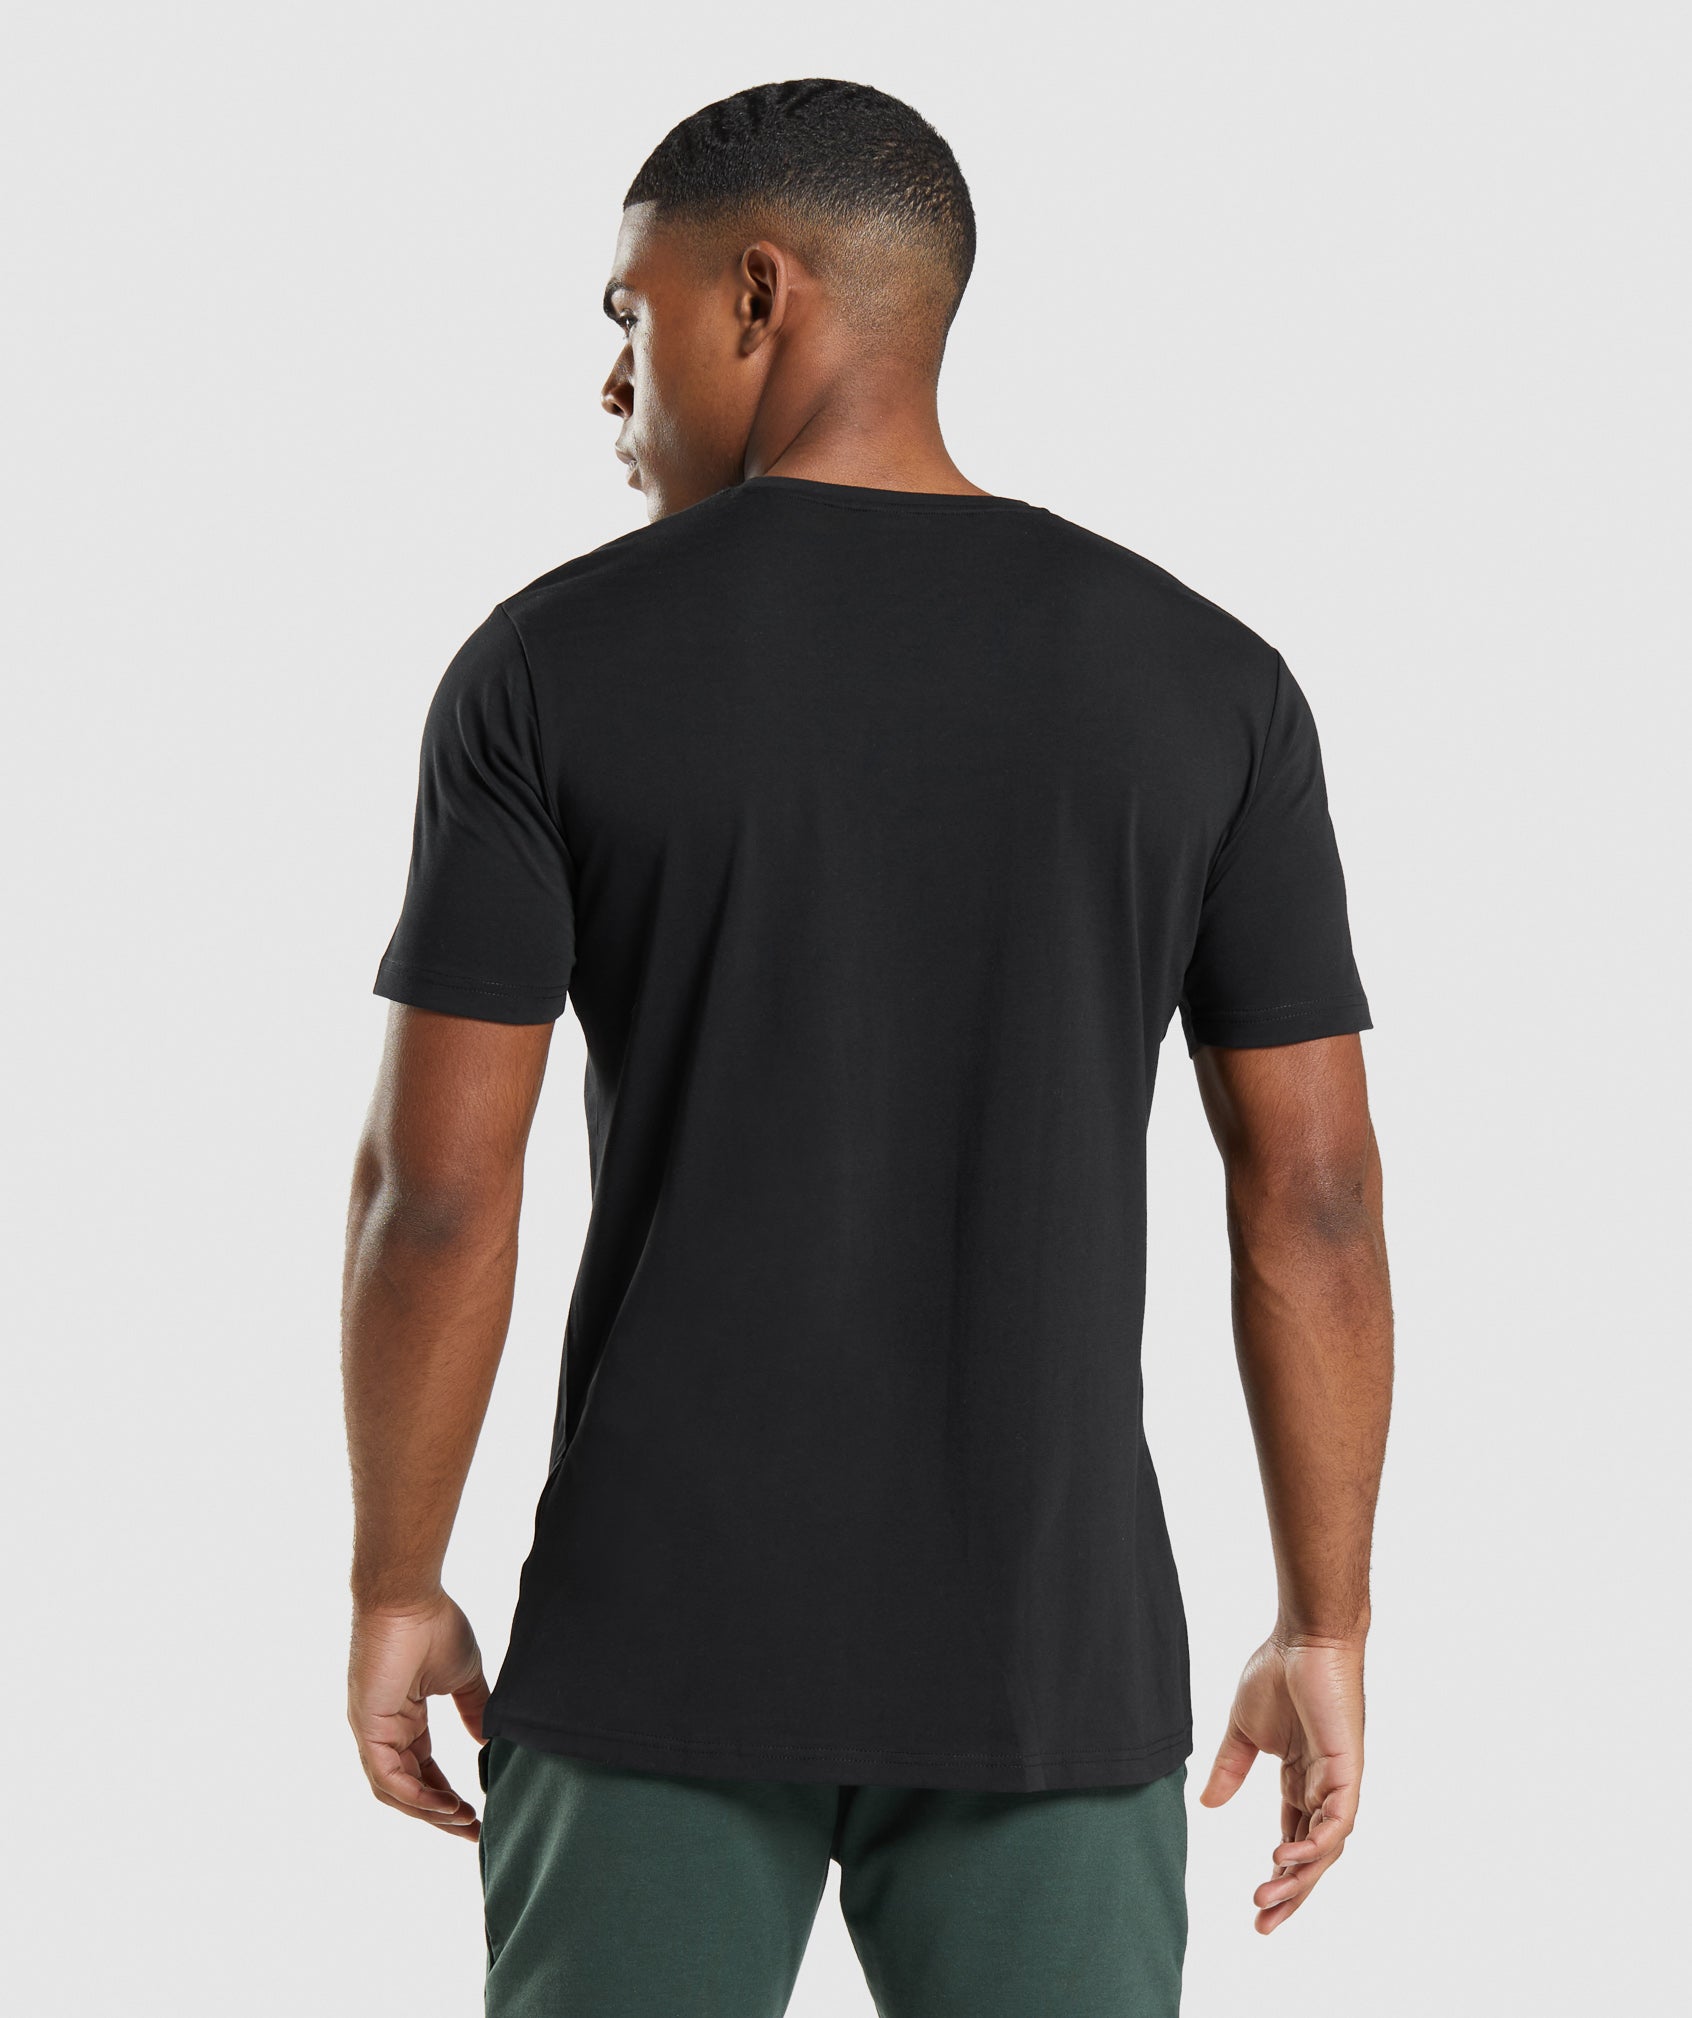 Comprar Camiseta Tirantes Gymshark Baratas - Critical Sleeveless Tee Hombre  Negras